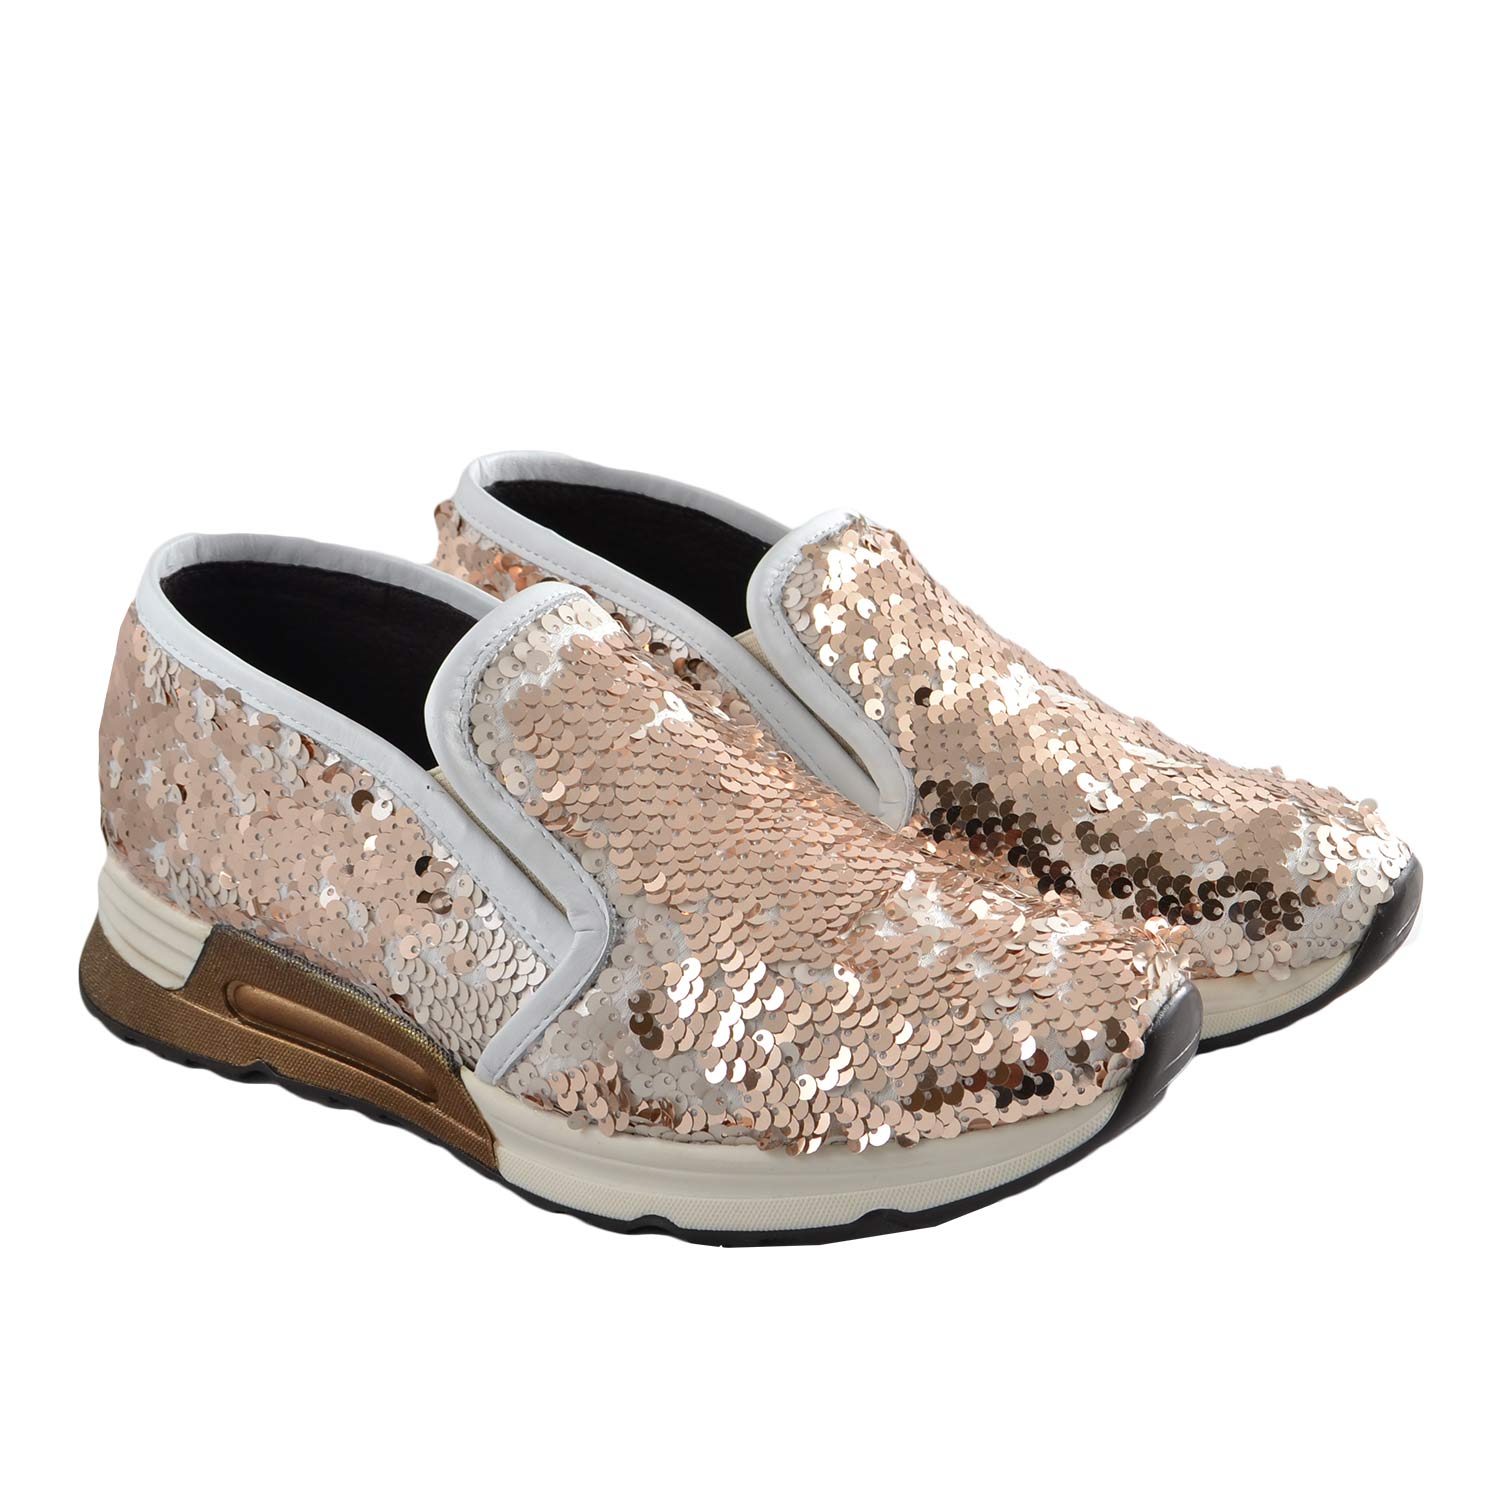 Sneaker slip on mocassino donna pailettes oro bianco in vera pelle made in Italy risvoltabili fondo running glamour